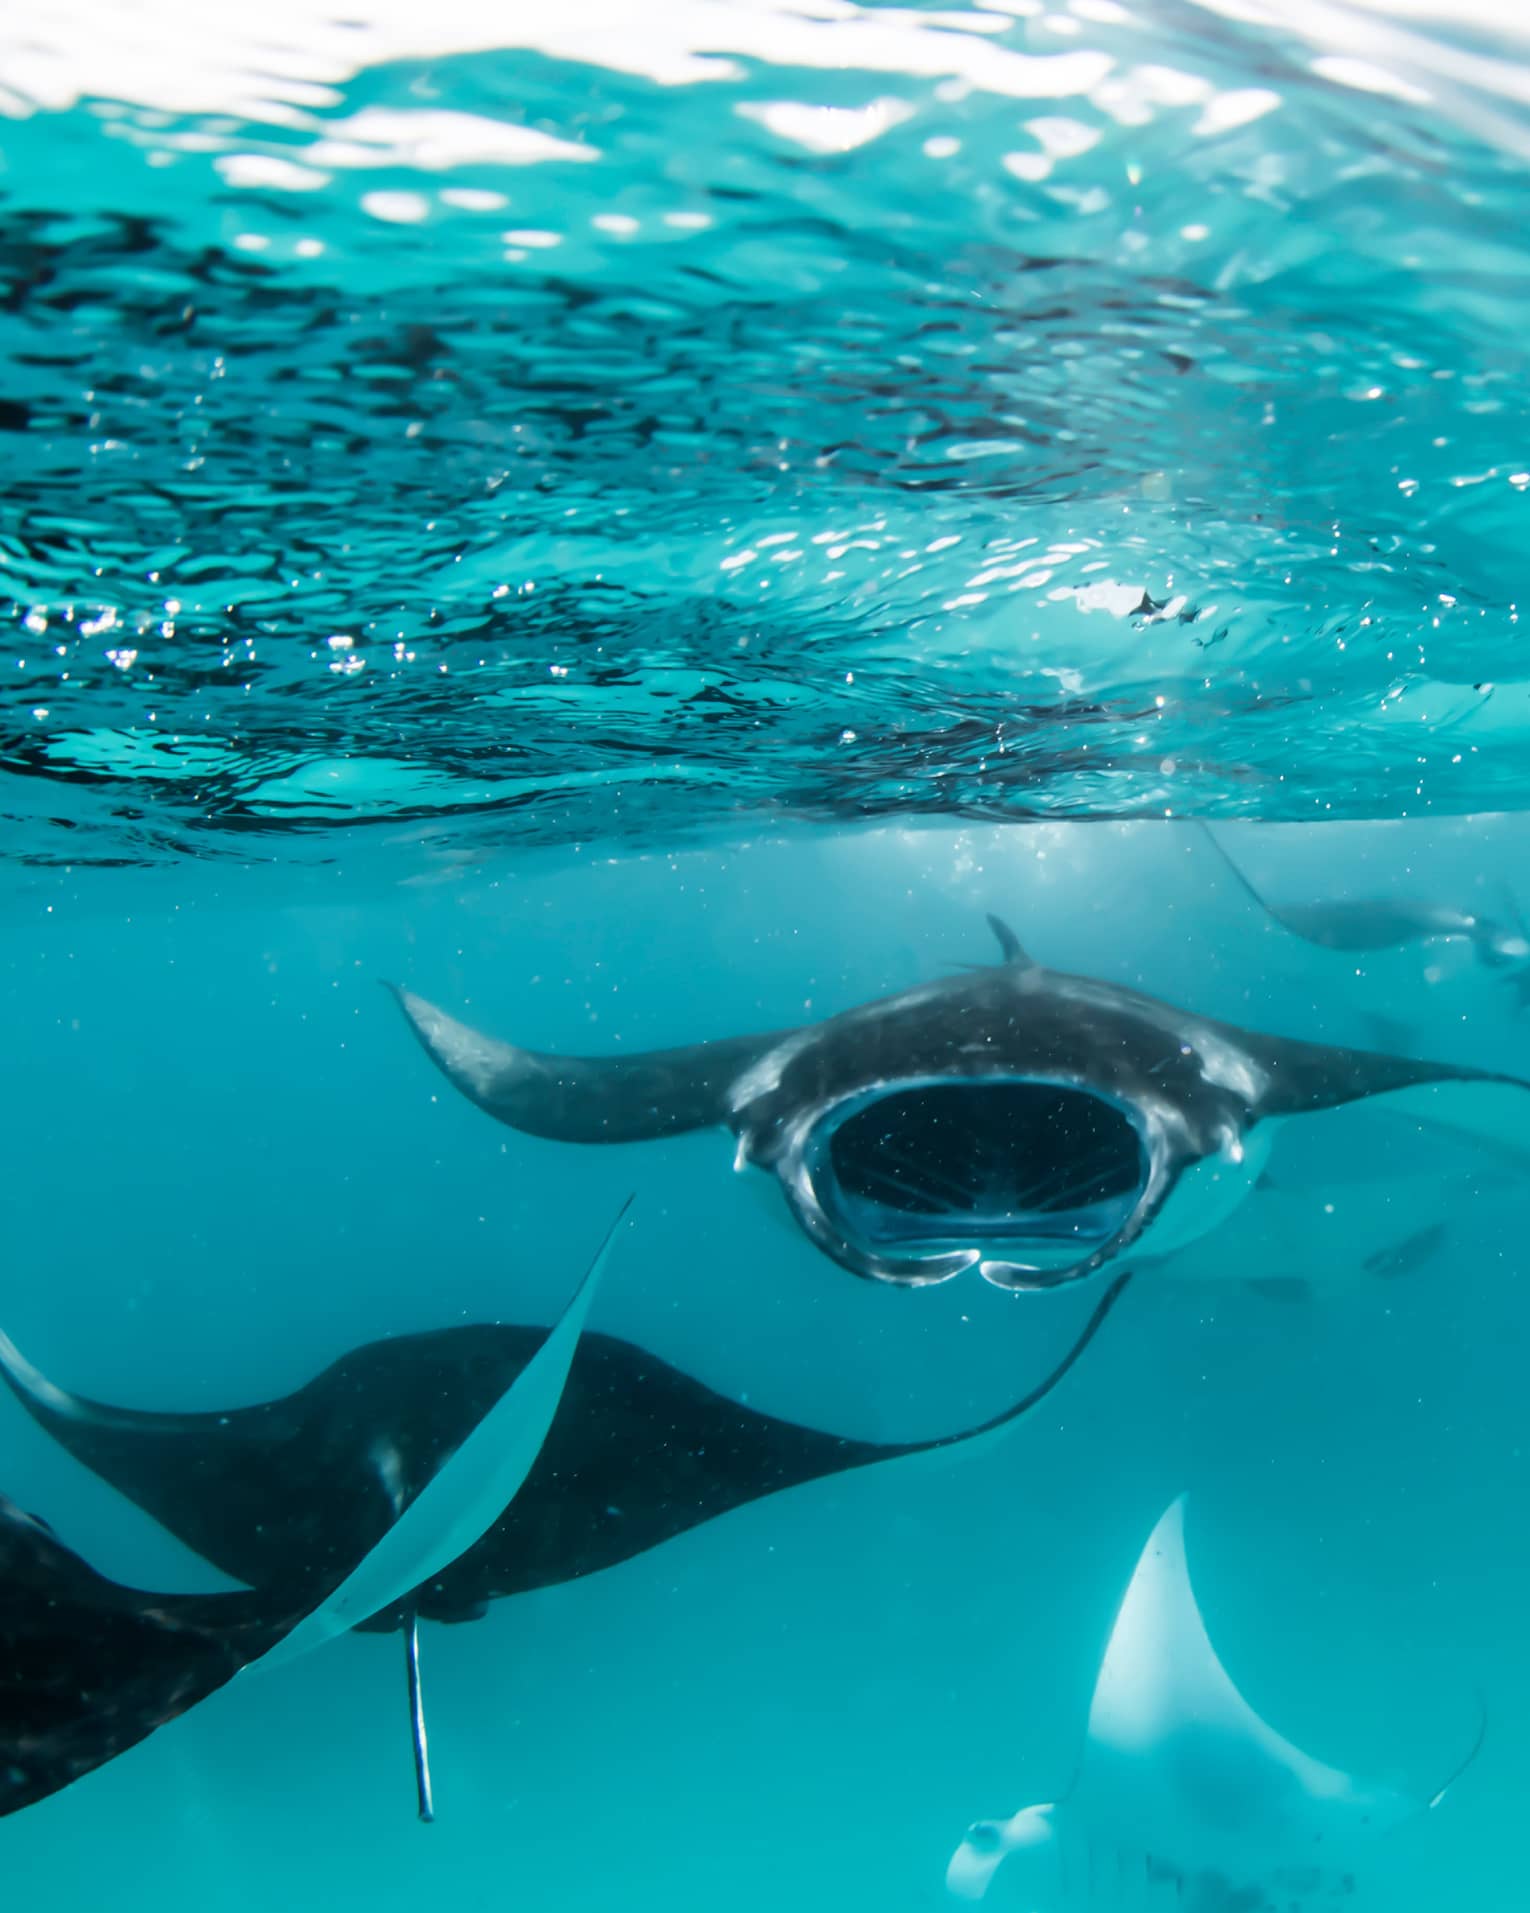 Manta rays swimming underwater